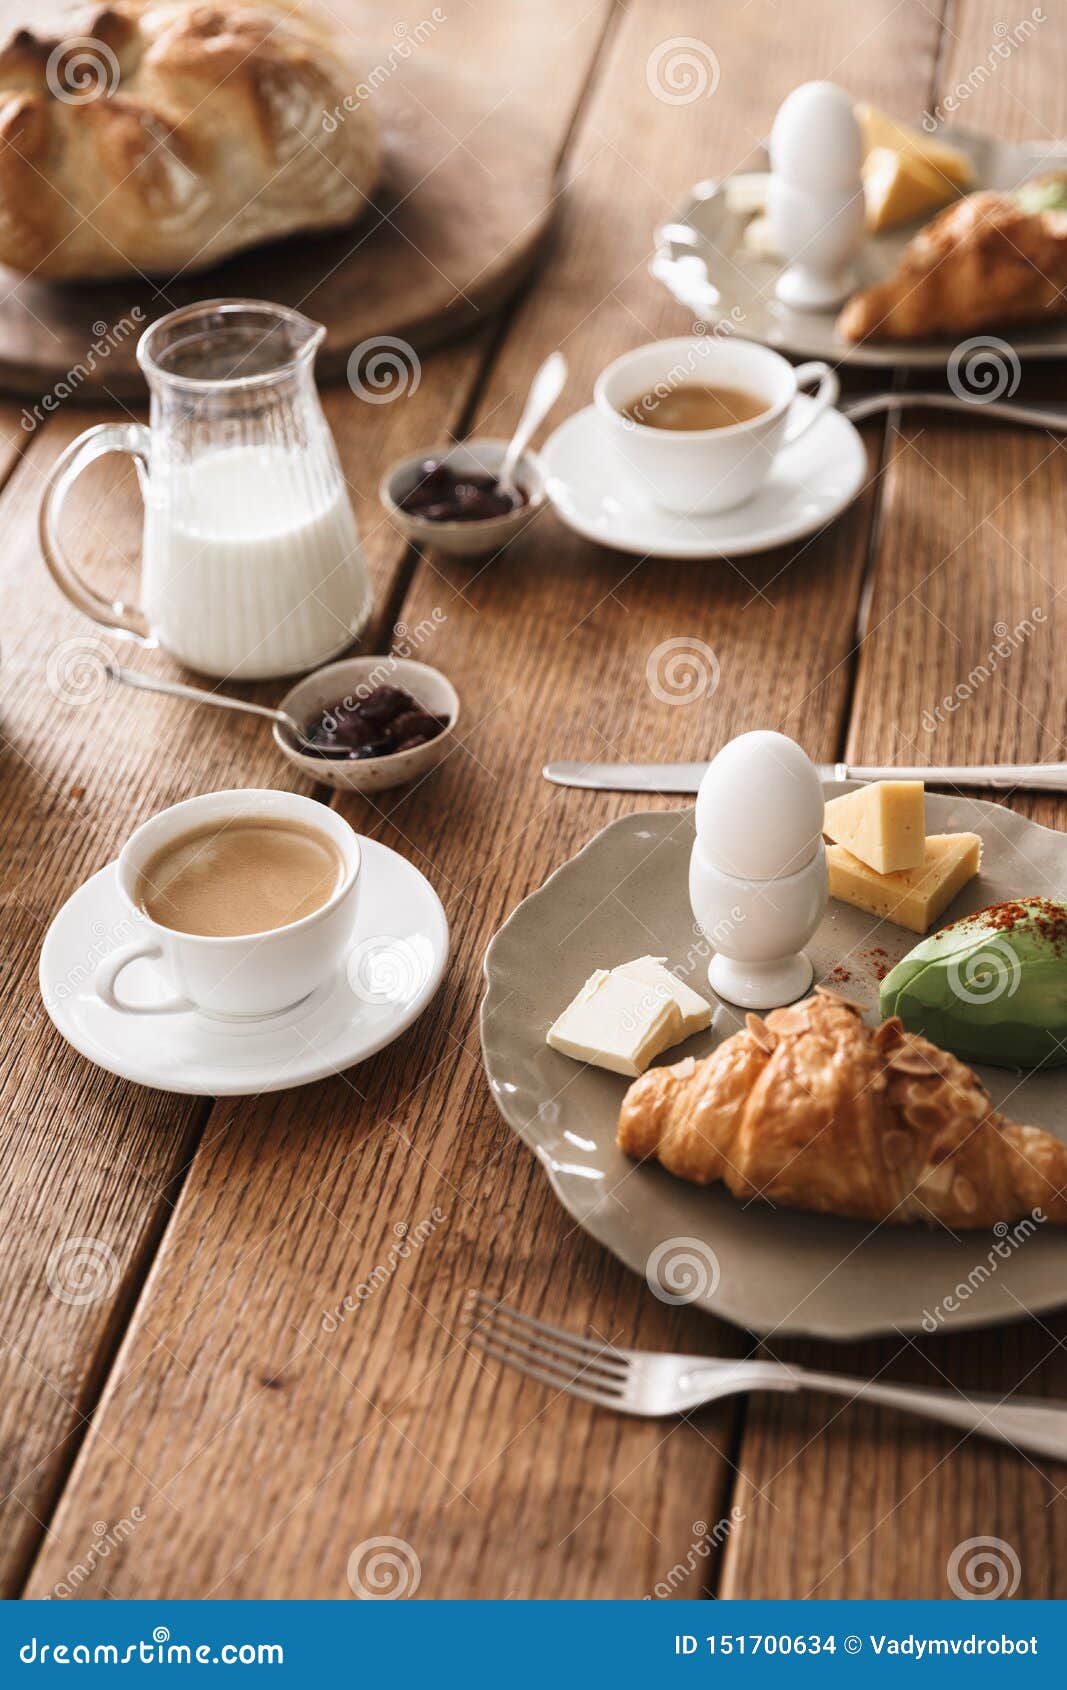 Hilo Chat para hablar de todo. - Página 35 Foto-de-comida-en-una-mesa-madera-croissant-huevos-boller%C3%ADa-leche-y-tazas-con-caf%C3%A9-la-vista-superior-del-desayuno-deliciosa-151700634